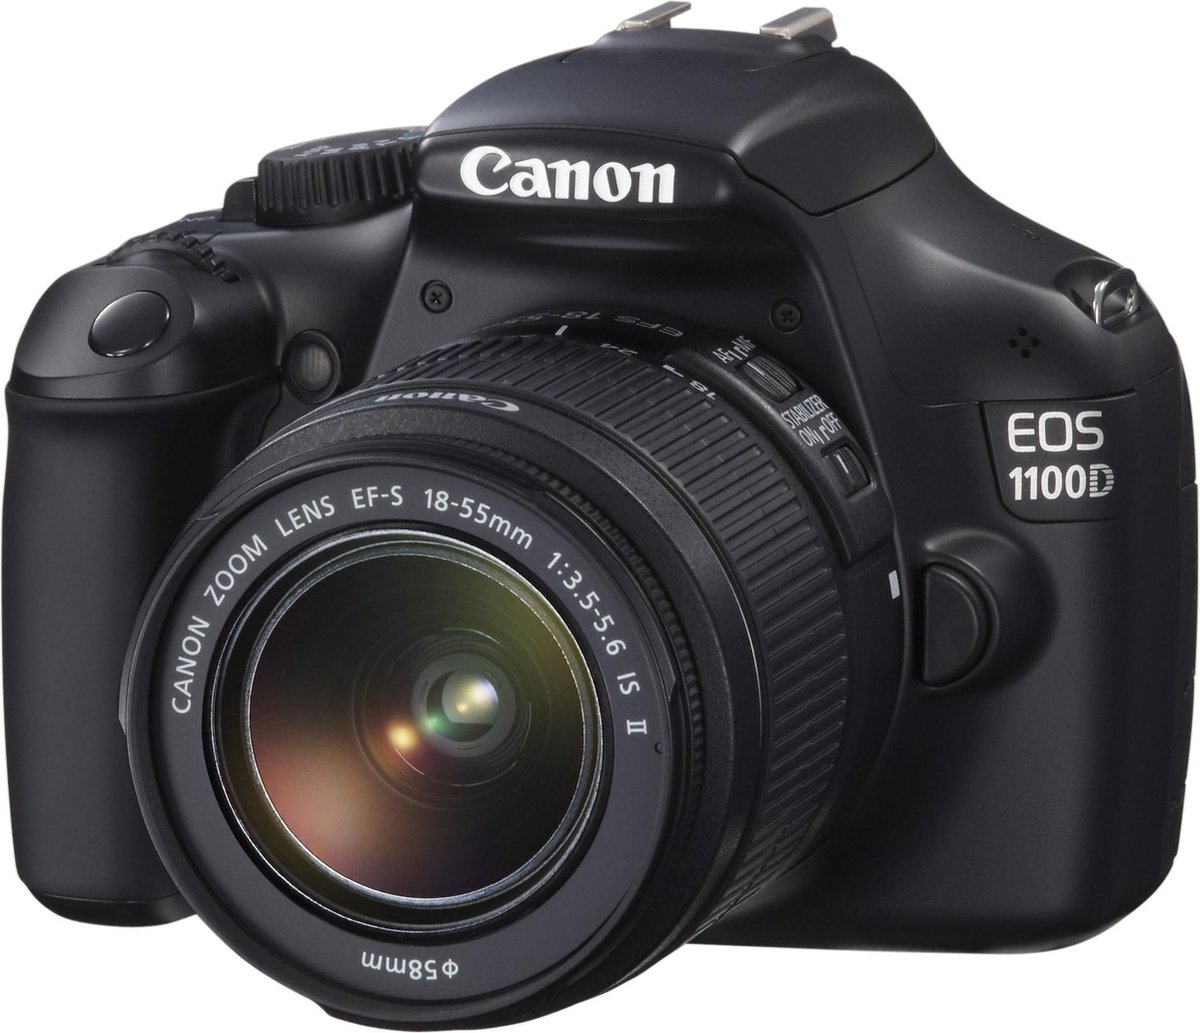 struik gesmolten te ontvangen Canon EOS 1100D + 18-55mm II IS | bol.com